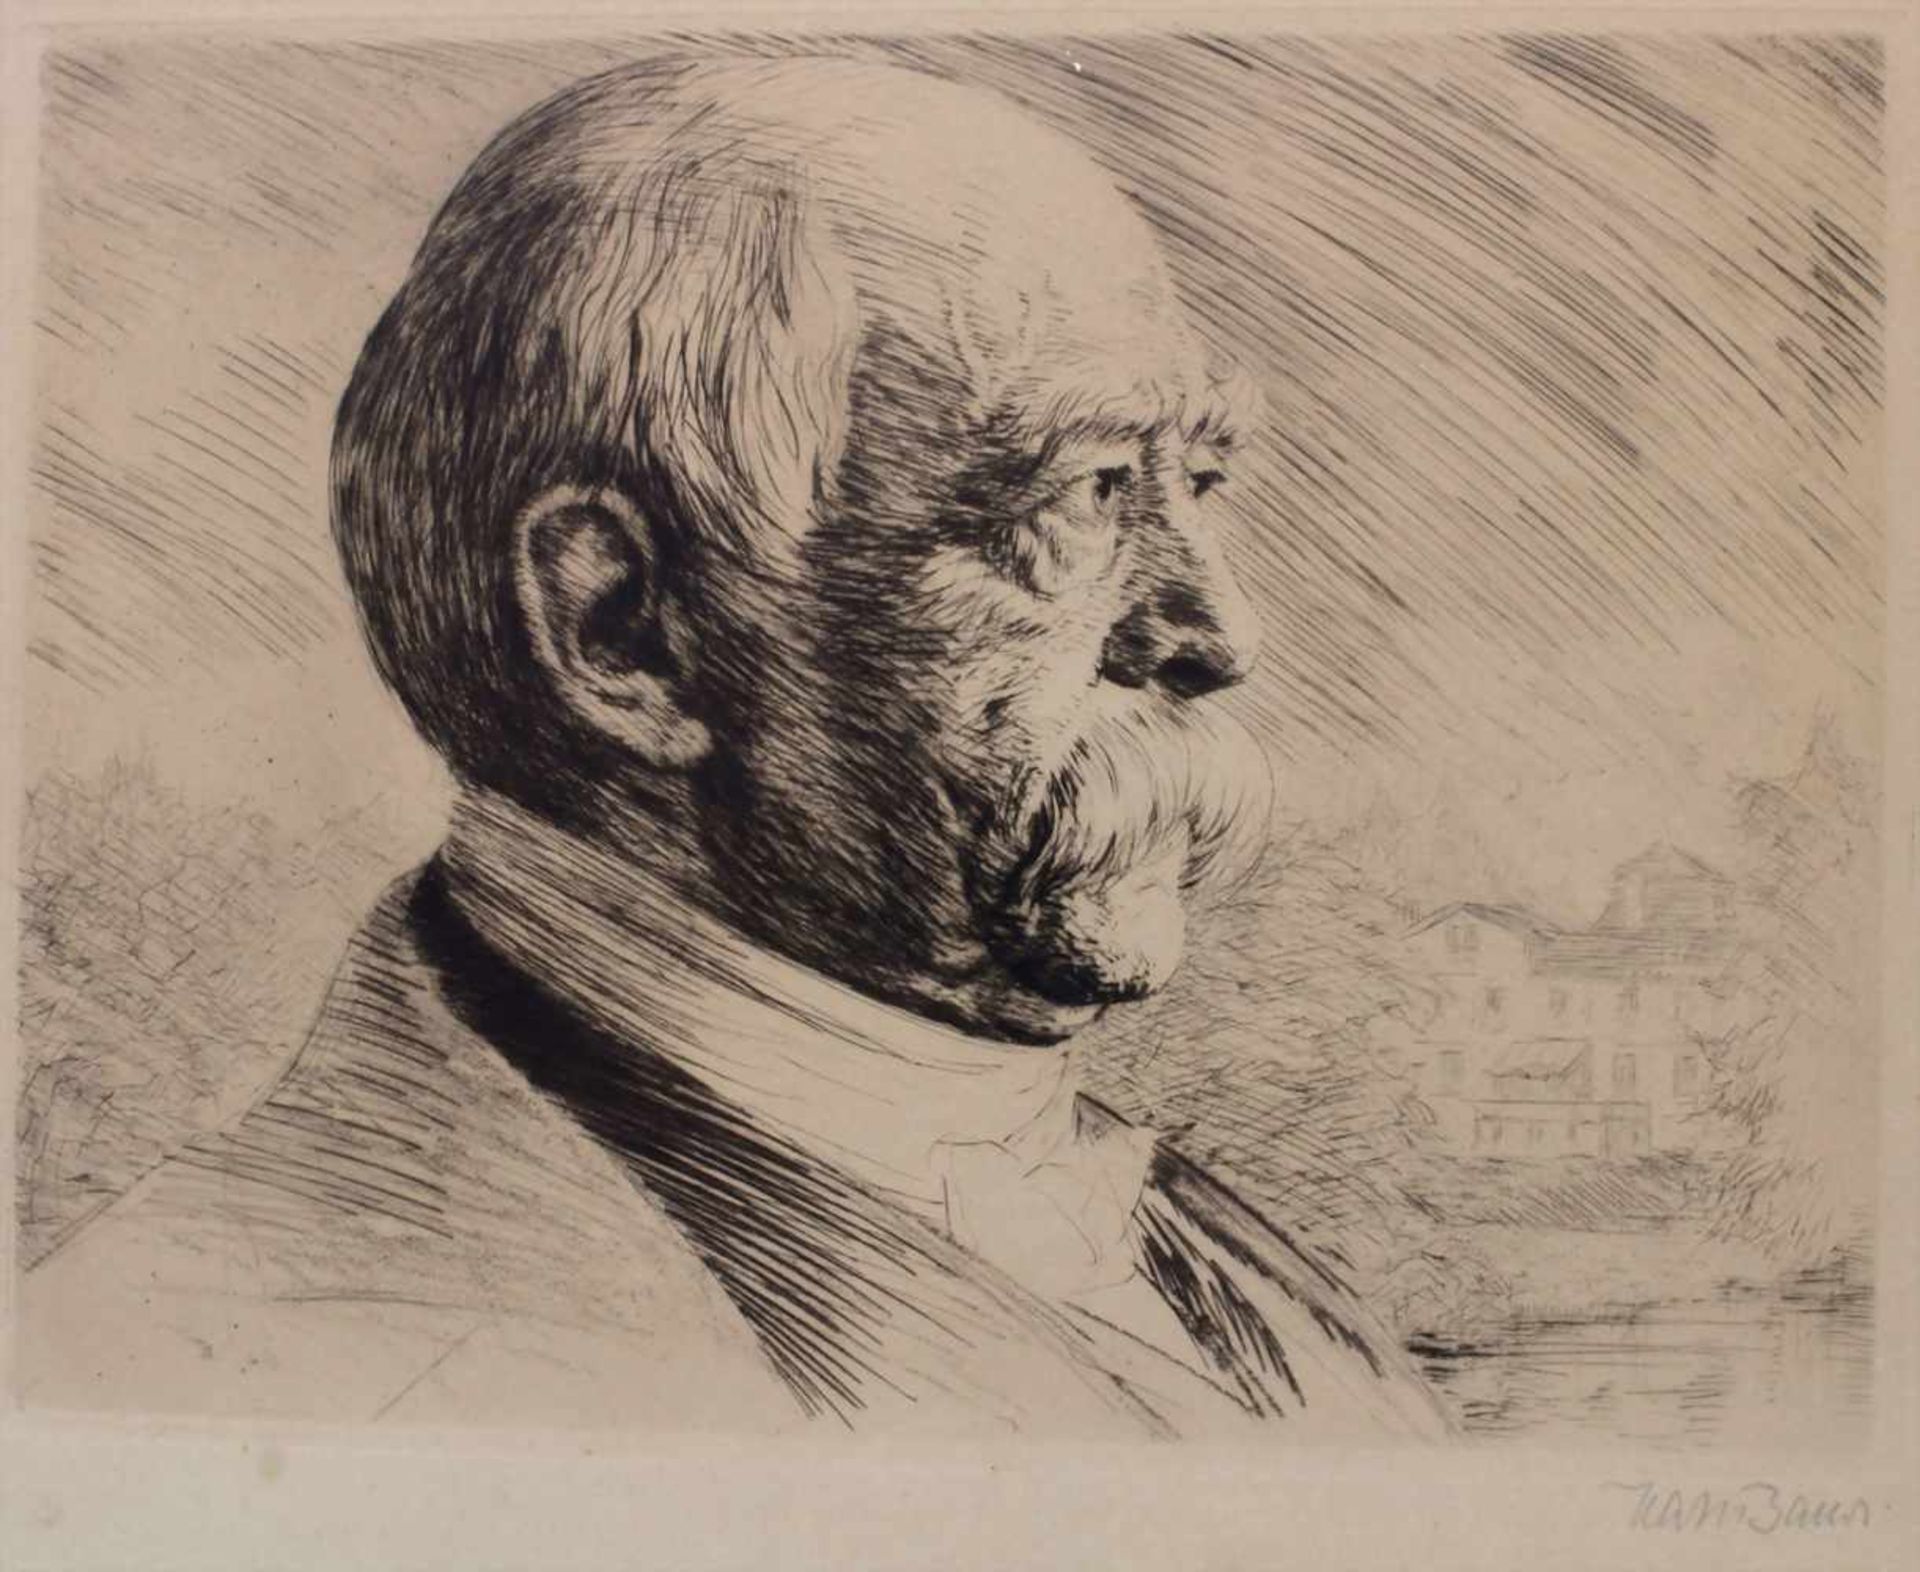 Hans Baur (1829-1897), Porträts 'Bismarck' und 'Friedrich II' / 2 portraits 'Bismarck' and ' - Image 3 of 11